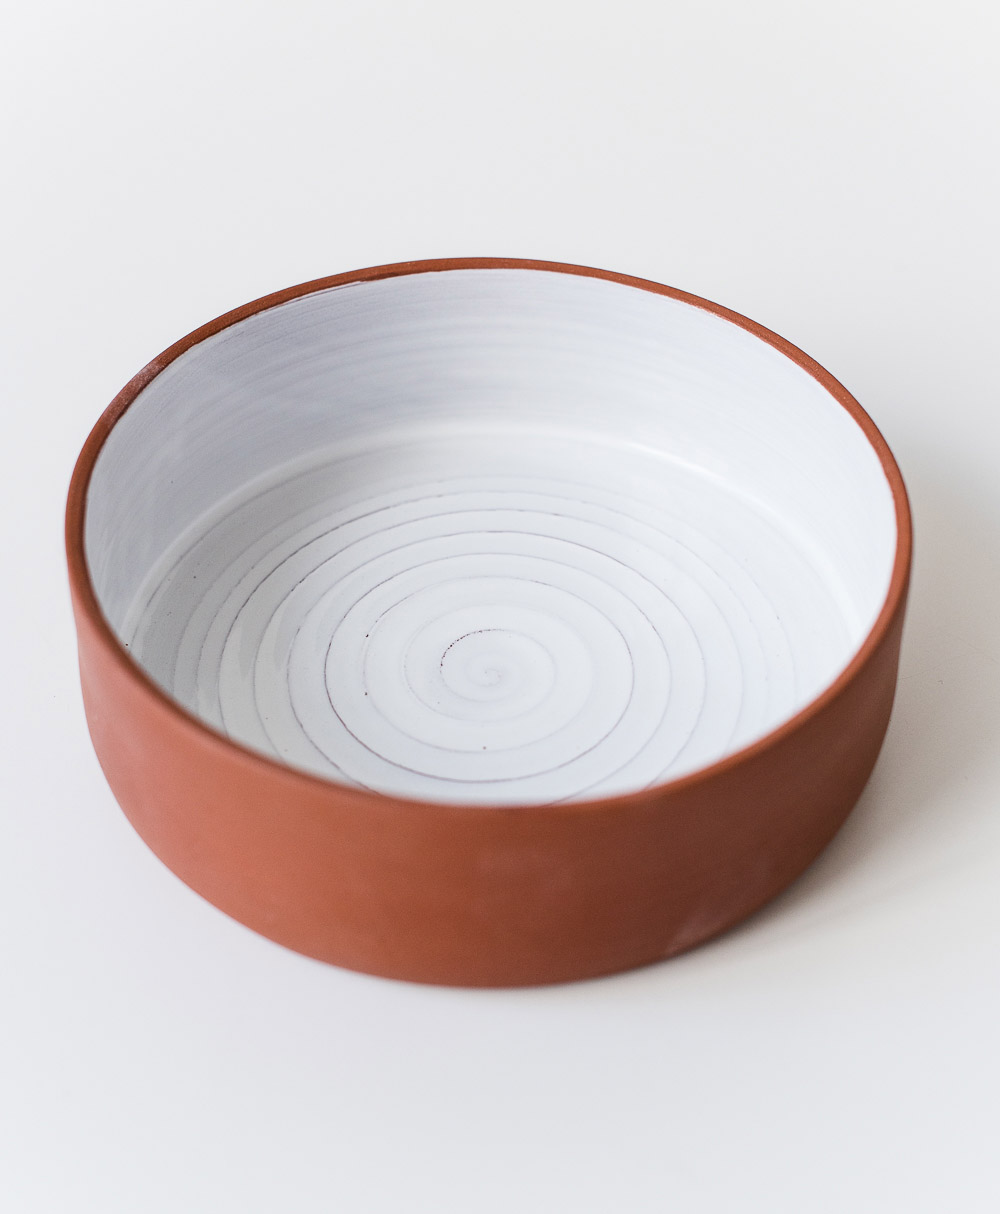 Глубокая глиняная миска для салата или хранения фруктов, вместительная керамическая миска ручной работы красивой текстурной поверхностью цвета шоколада.